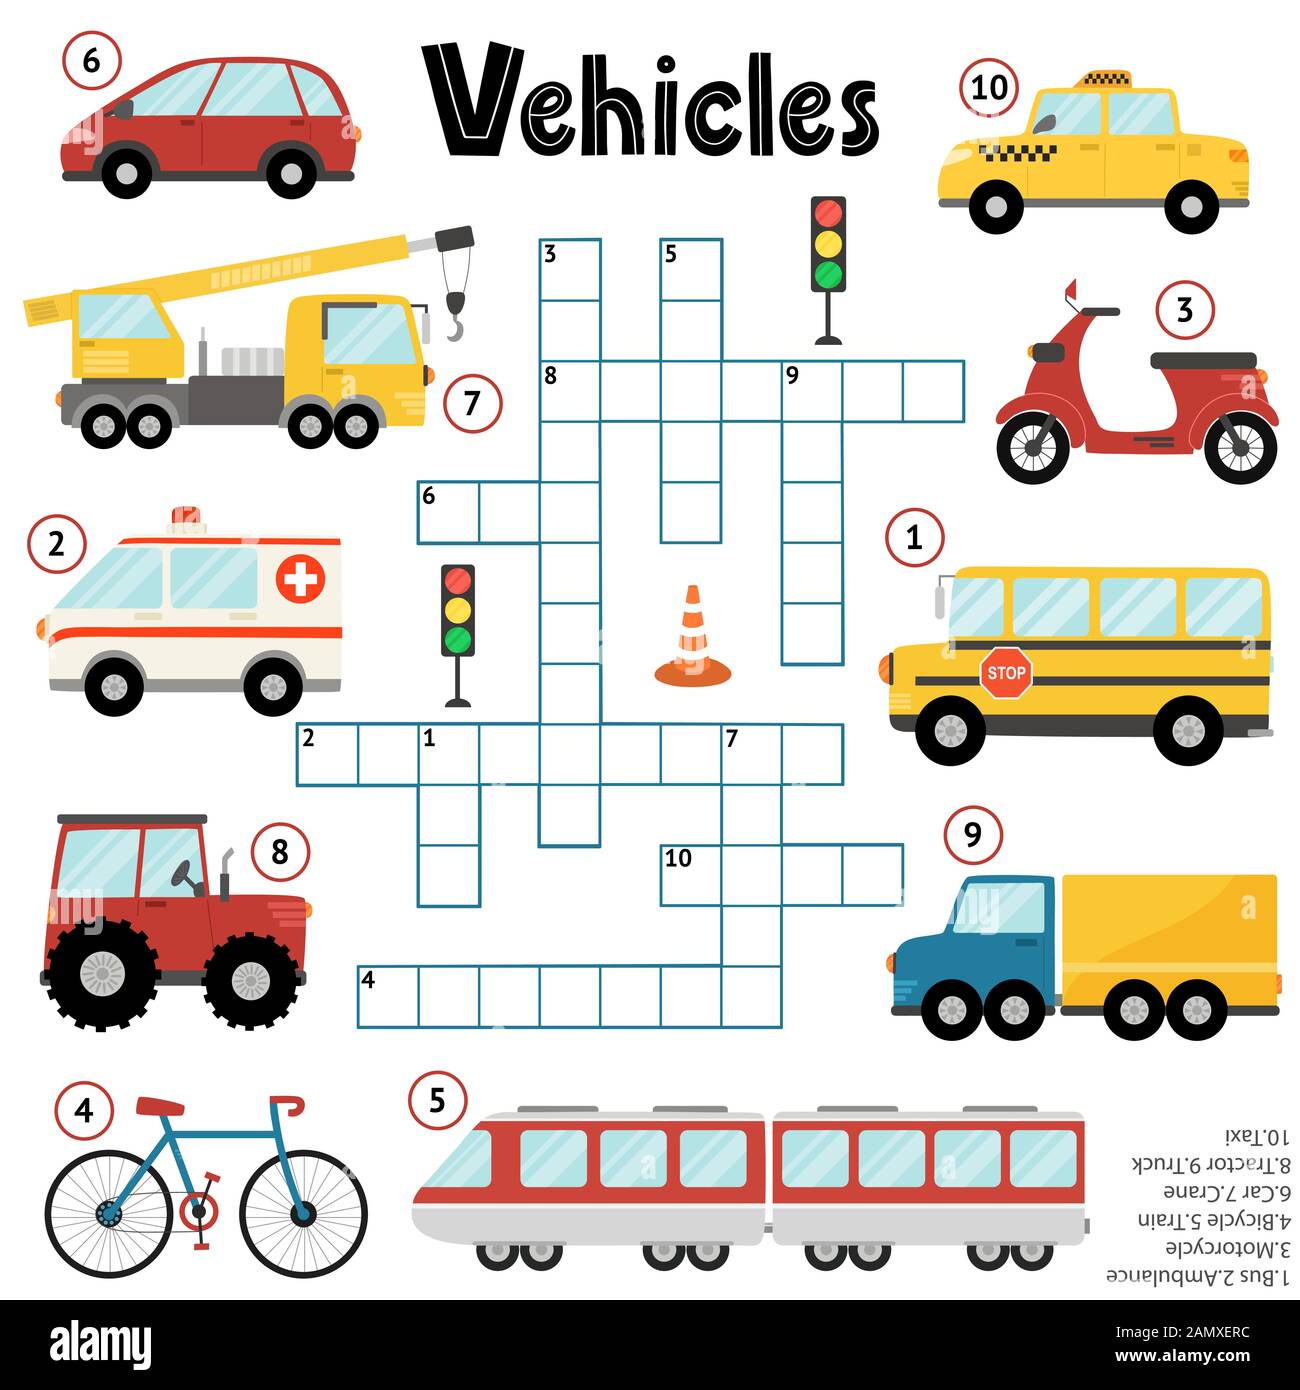 Jeu de puzzle en mots croisés pour les enfants sur les véhicules Image  Vectorielle Stock - Alamy